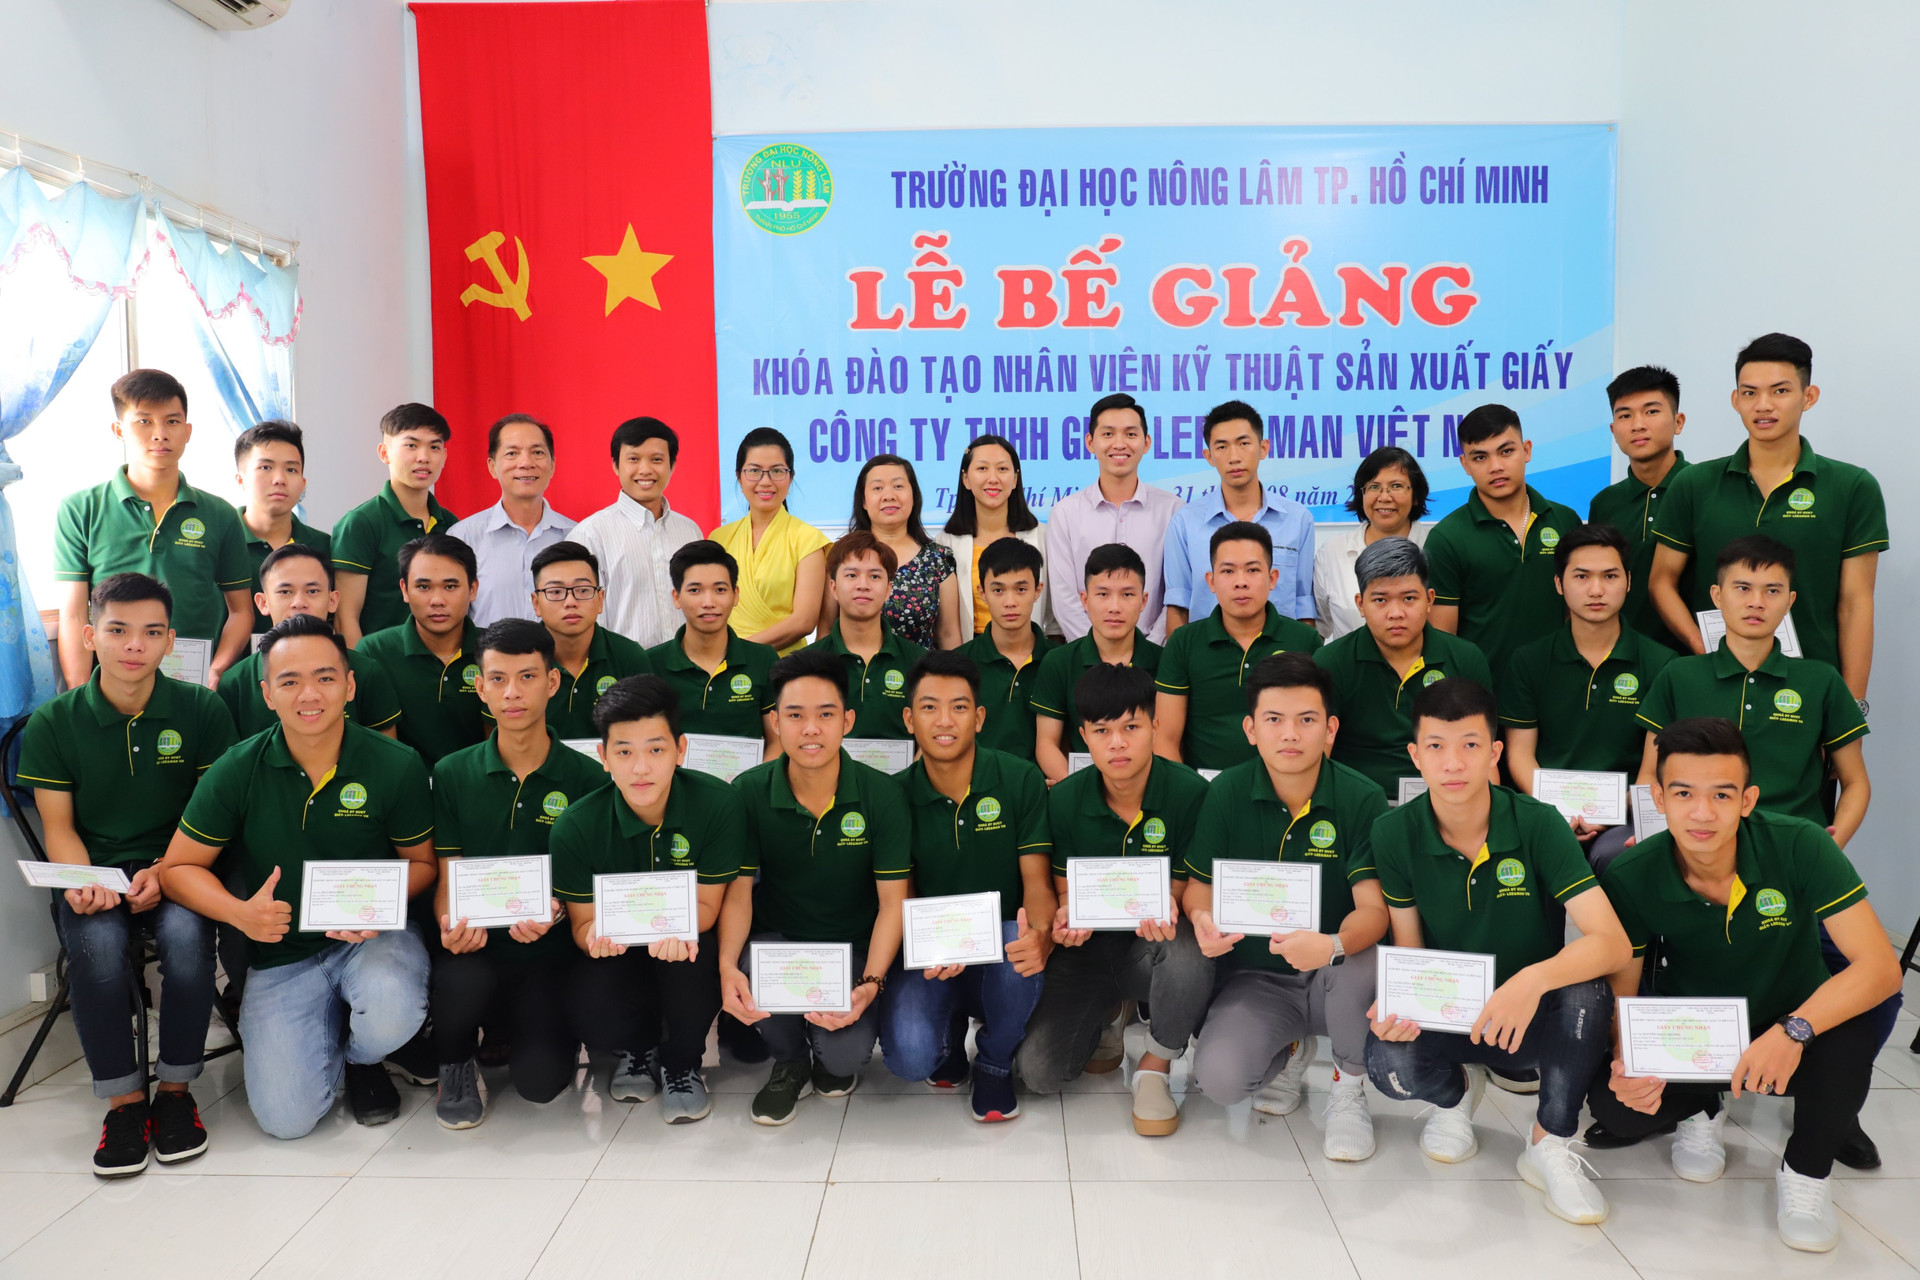 Lee & Man Việt Nam, 2 năm nâng tầm ngành giấy Việt Nam và đóng góp cho cộng đồng 